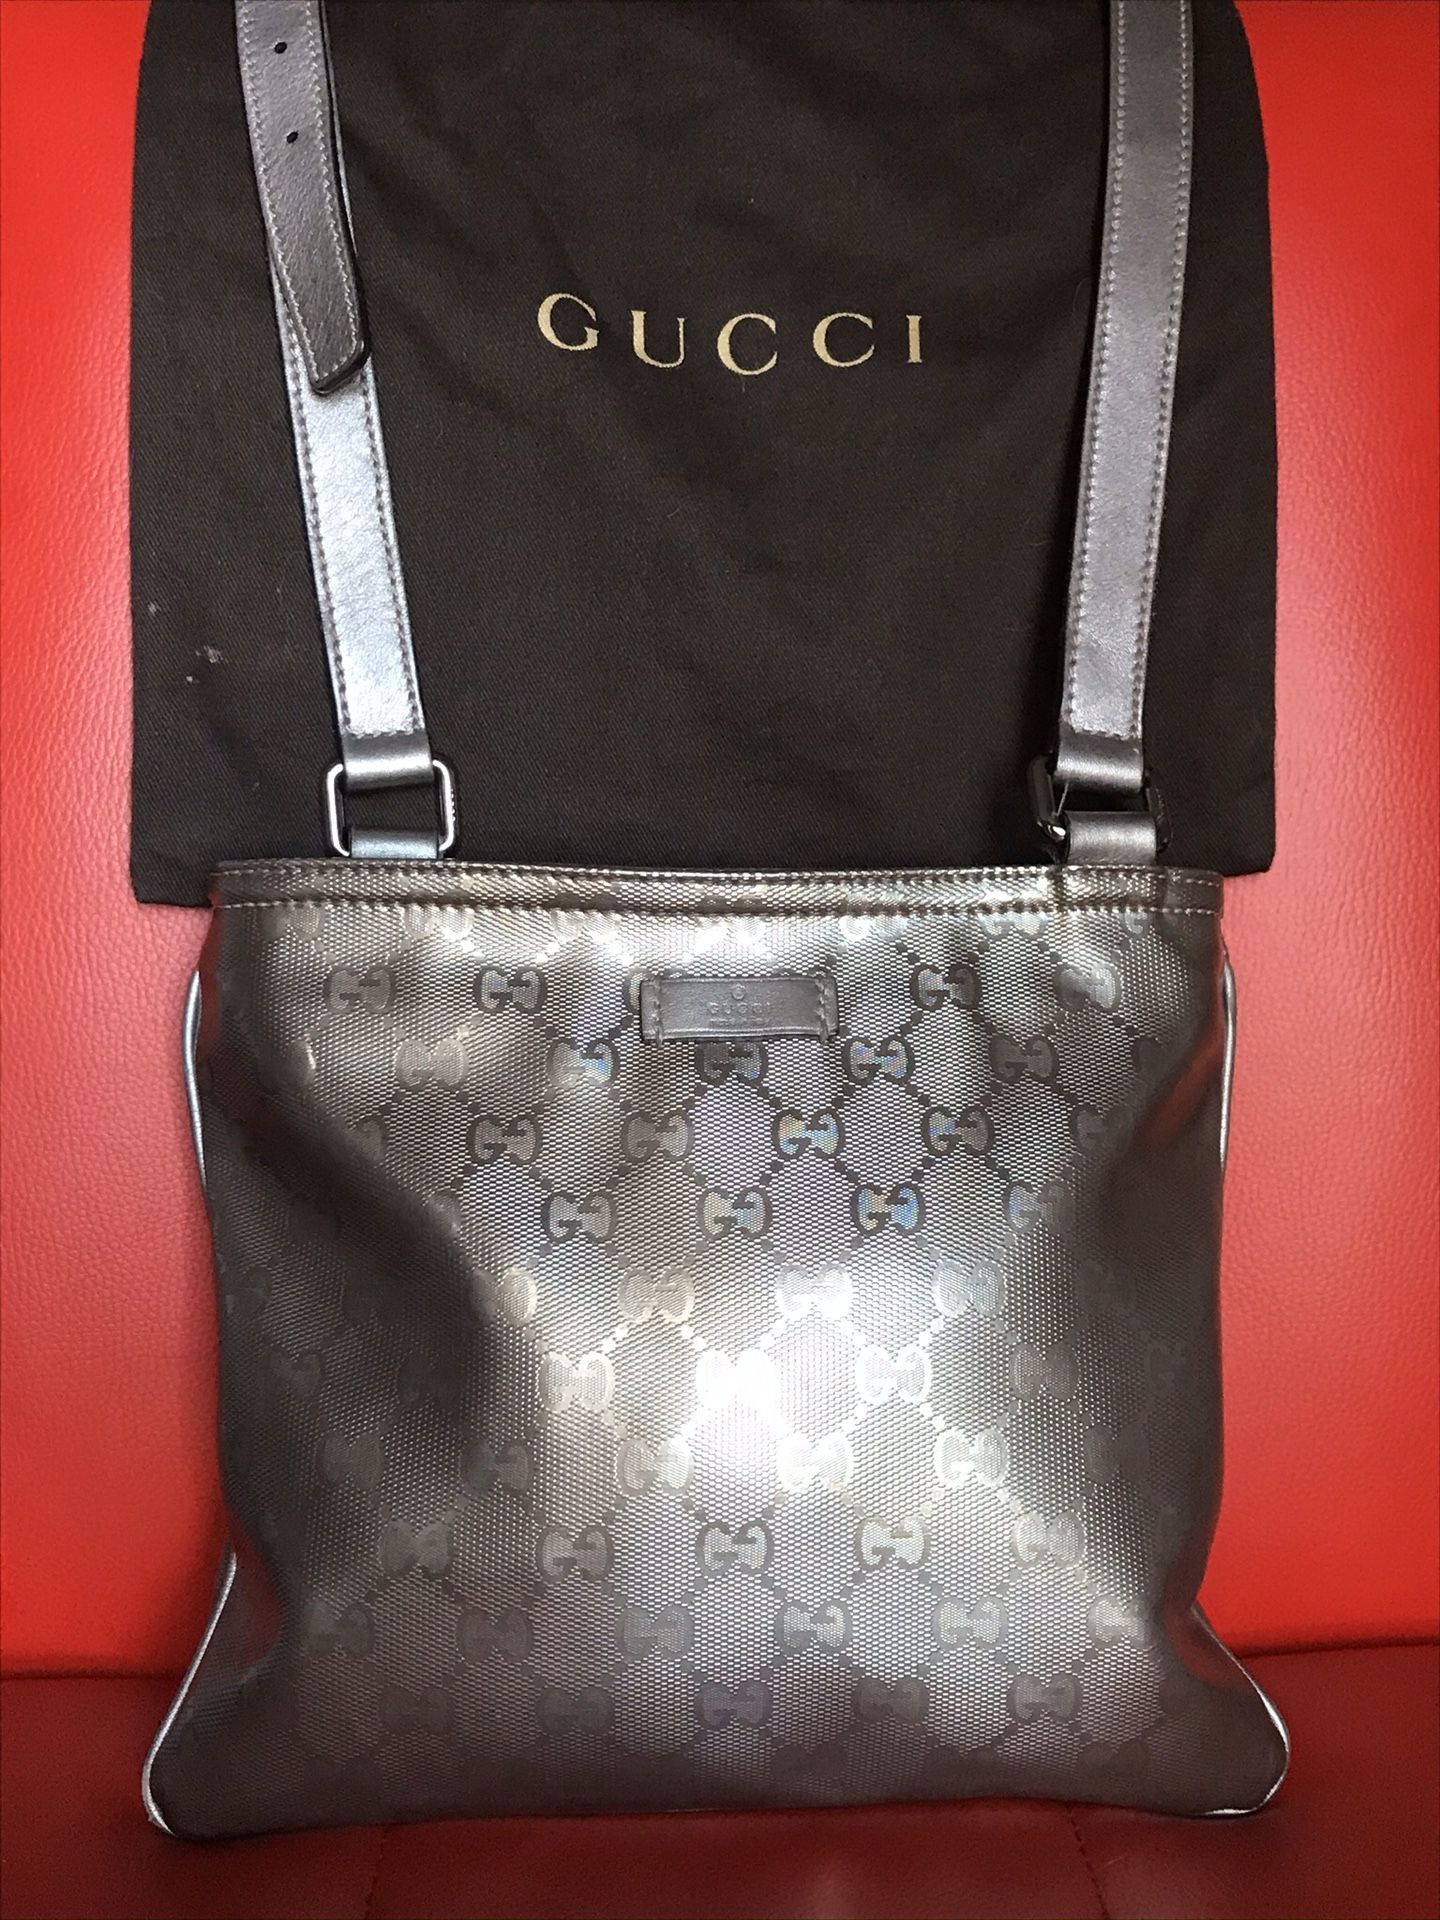 Gucci crossbody bag limited edition